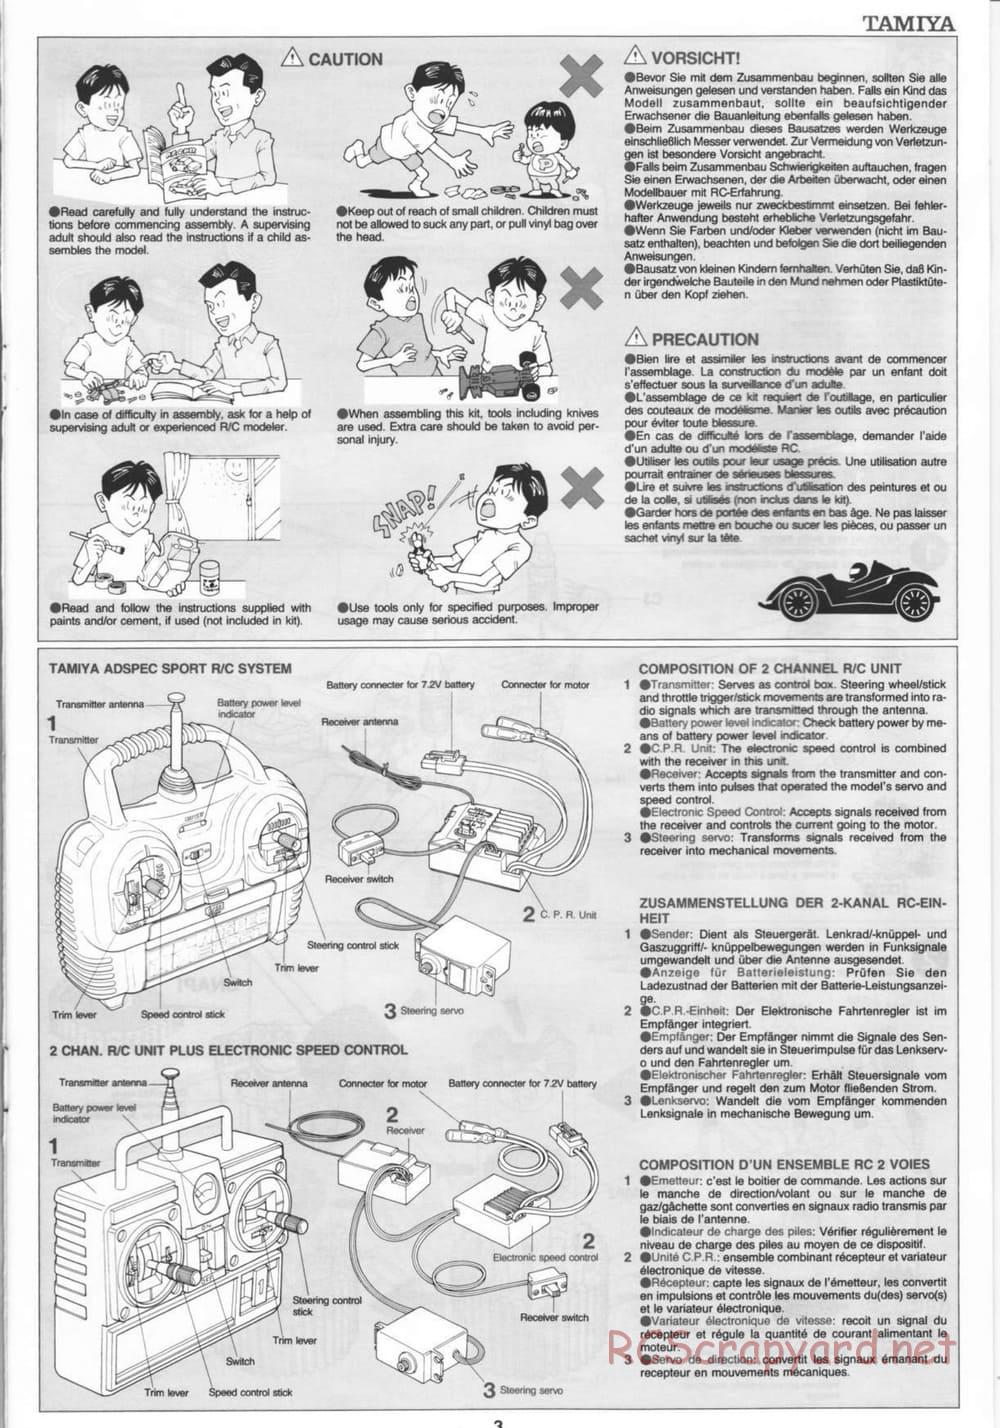 Tamiya - Thunder Blitz - Boy's 4WD Chassis - Manual - Page 3